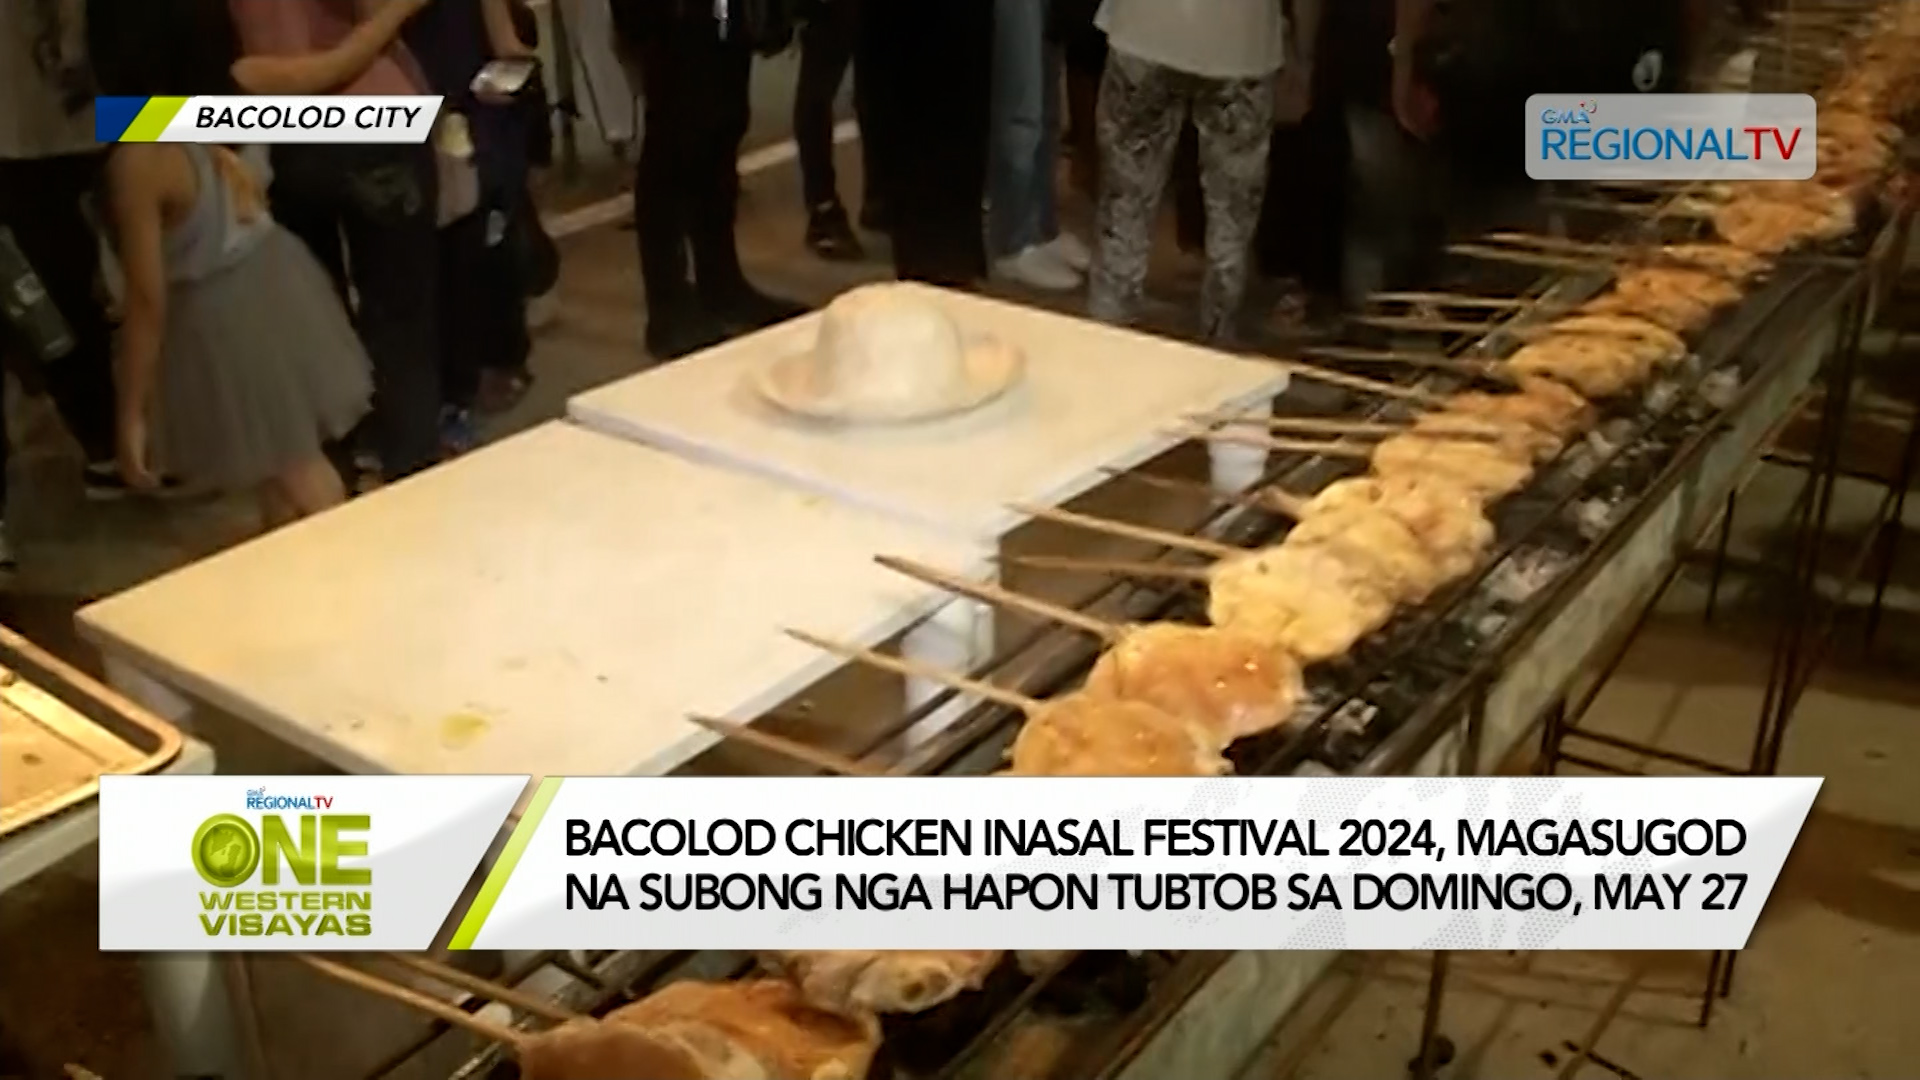 Bacolod Chicken Inasal Festival 2024, nagsugod na  tubtob sa Domingo, May 27